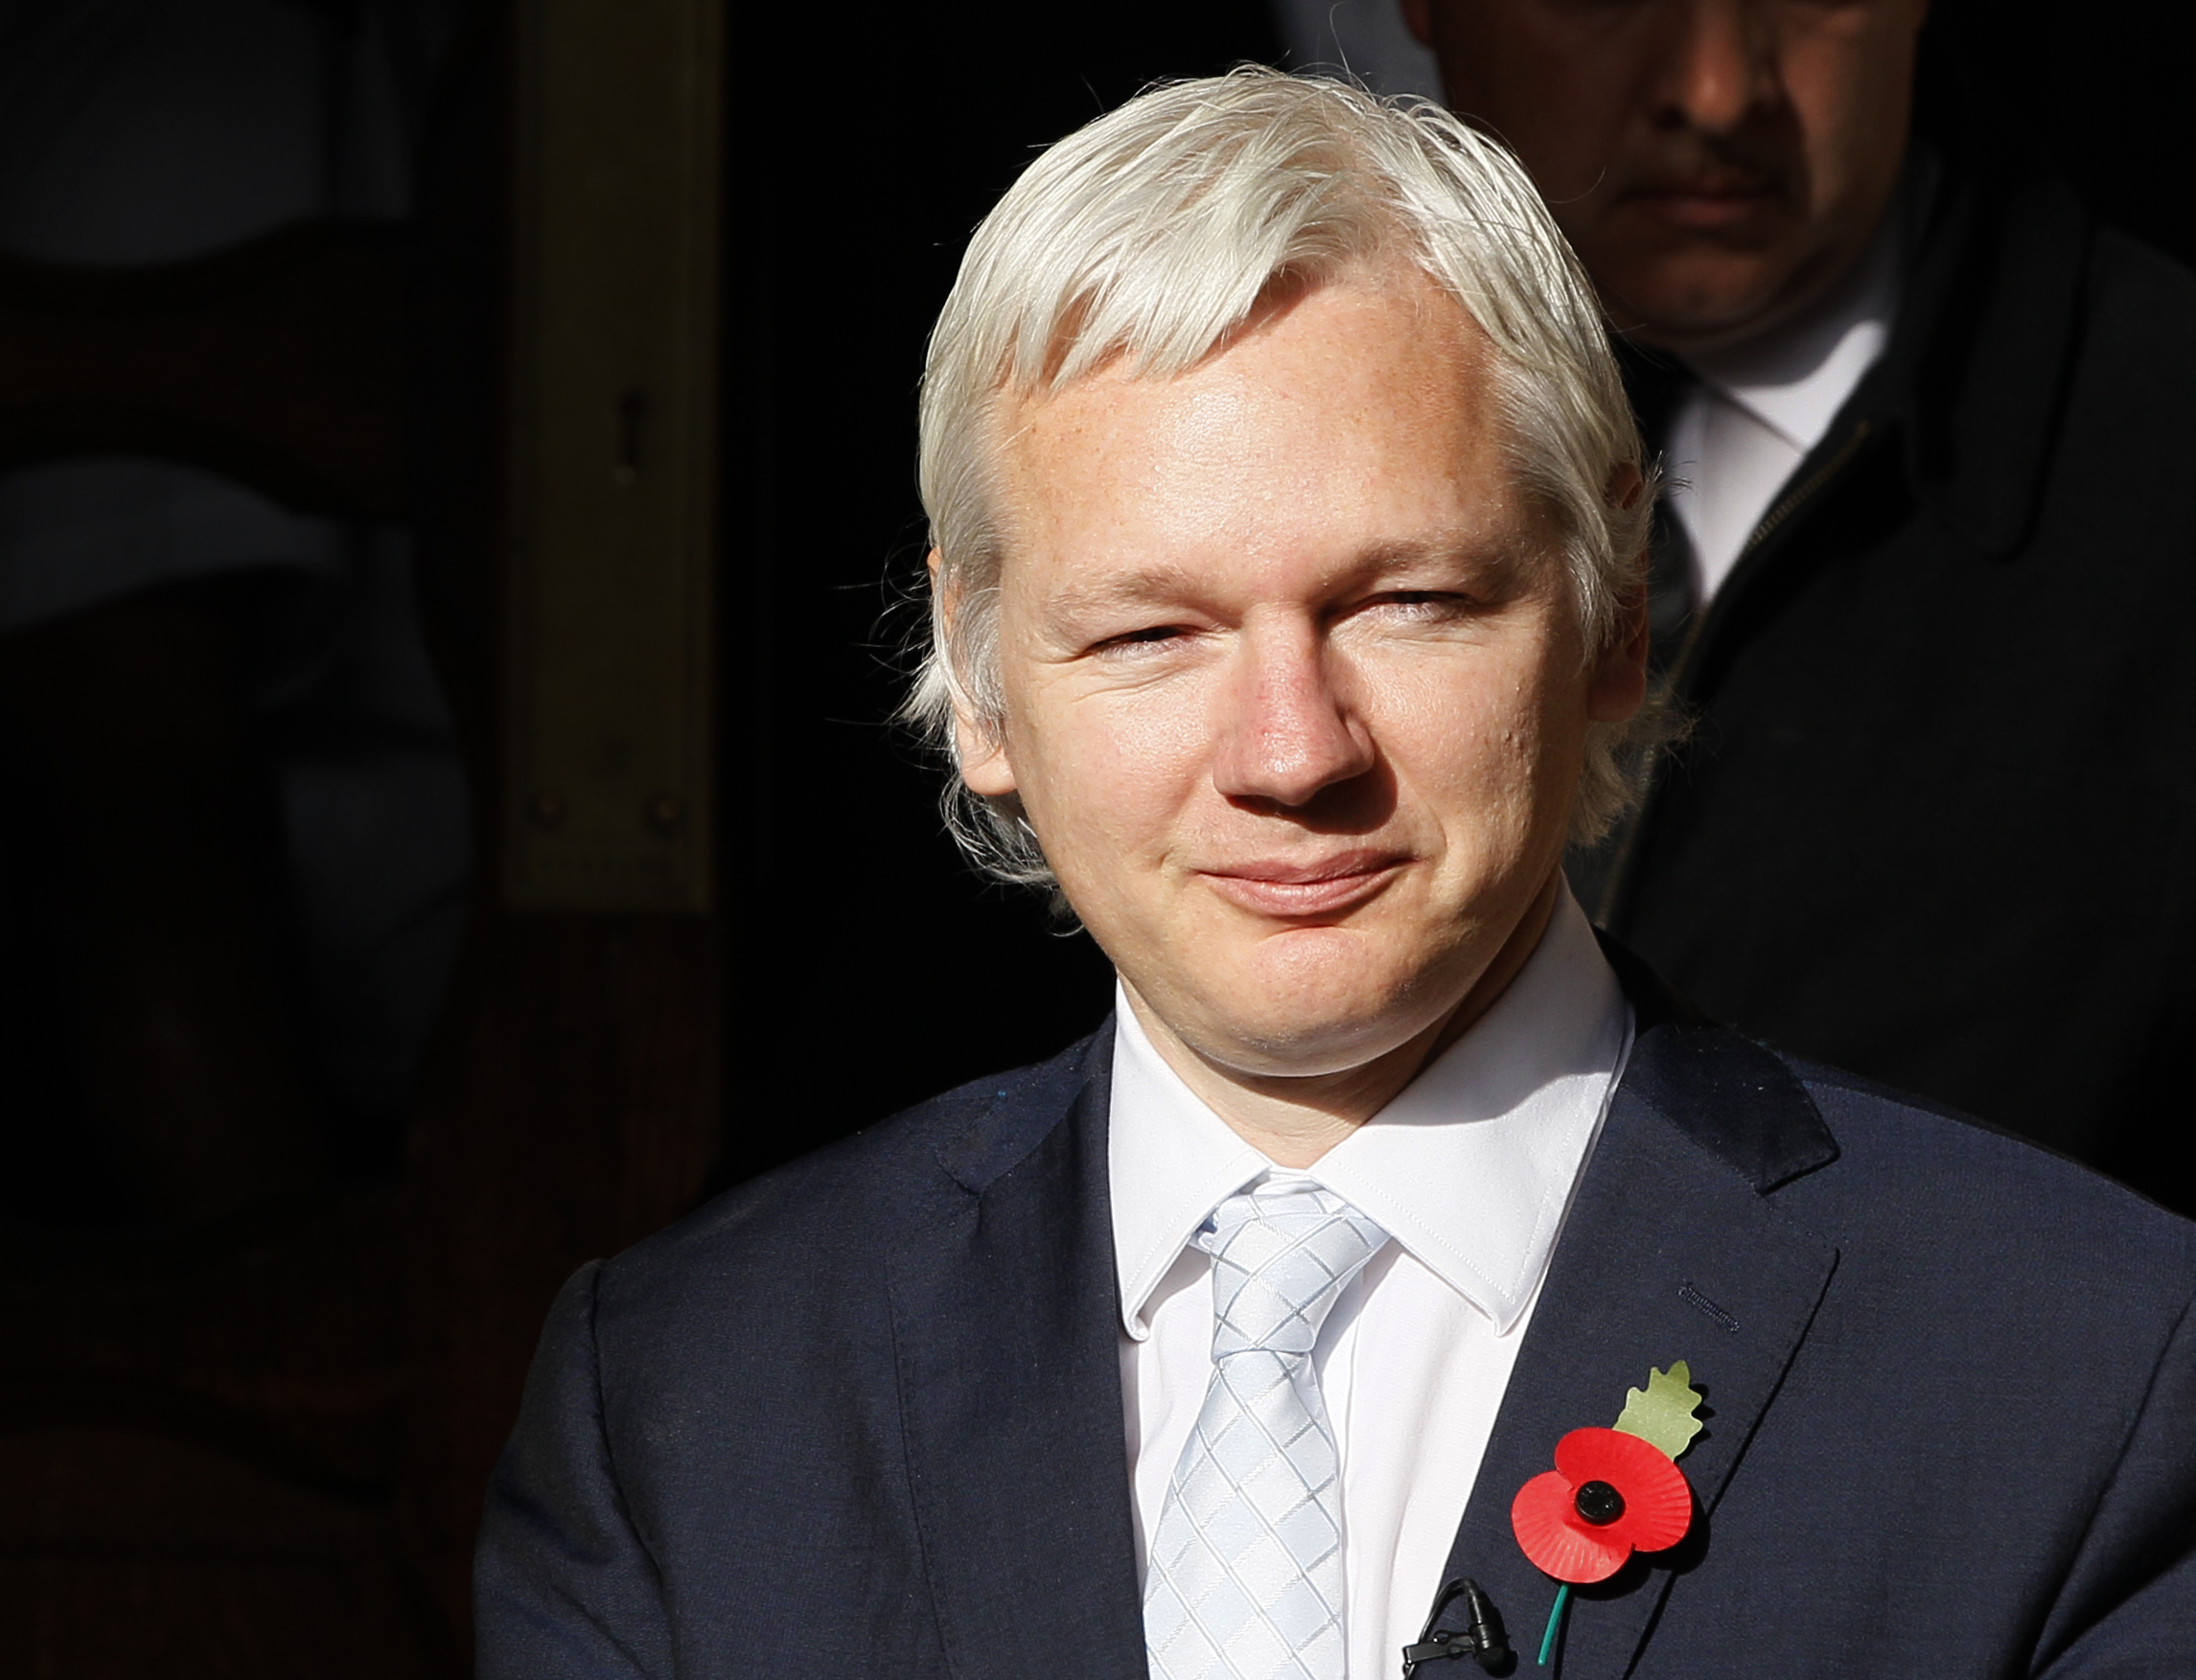 Snart tre månader efter förhandlingarna i Supreme Court - och ännu inget svar på frågan om Julian Assange utlämnas.